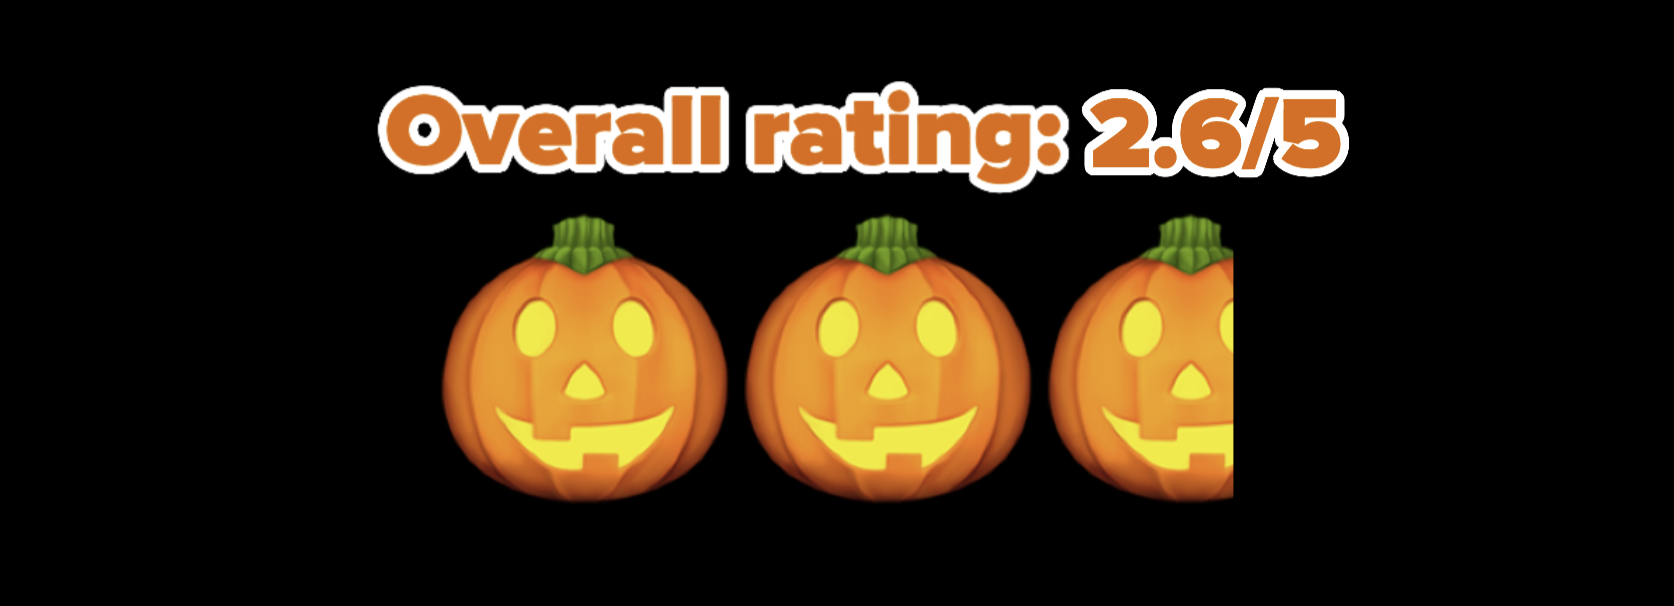 2.6/5 pumpkin rating